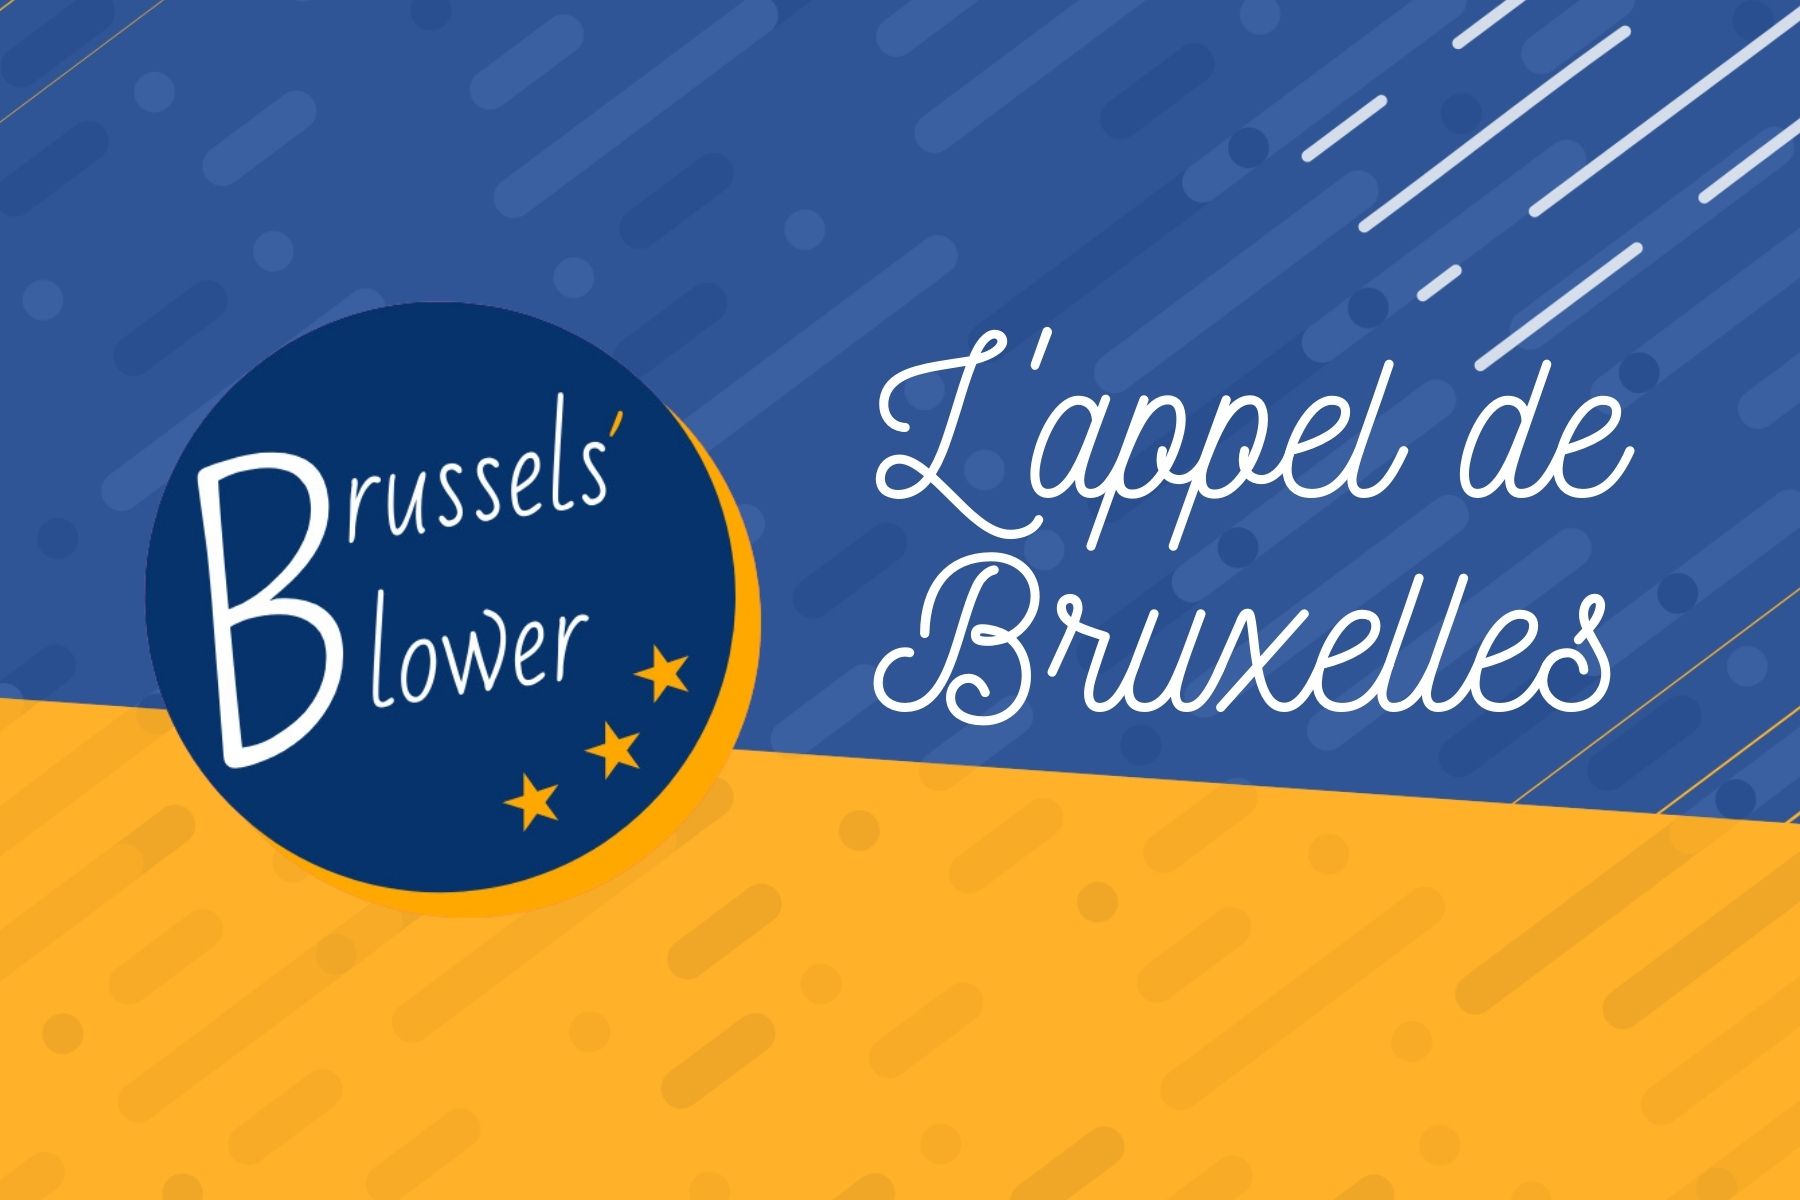 Brussel’s Blower : L’appel de Bruxelles #2 – Idris (David Sassoli)